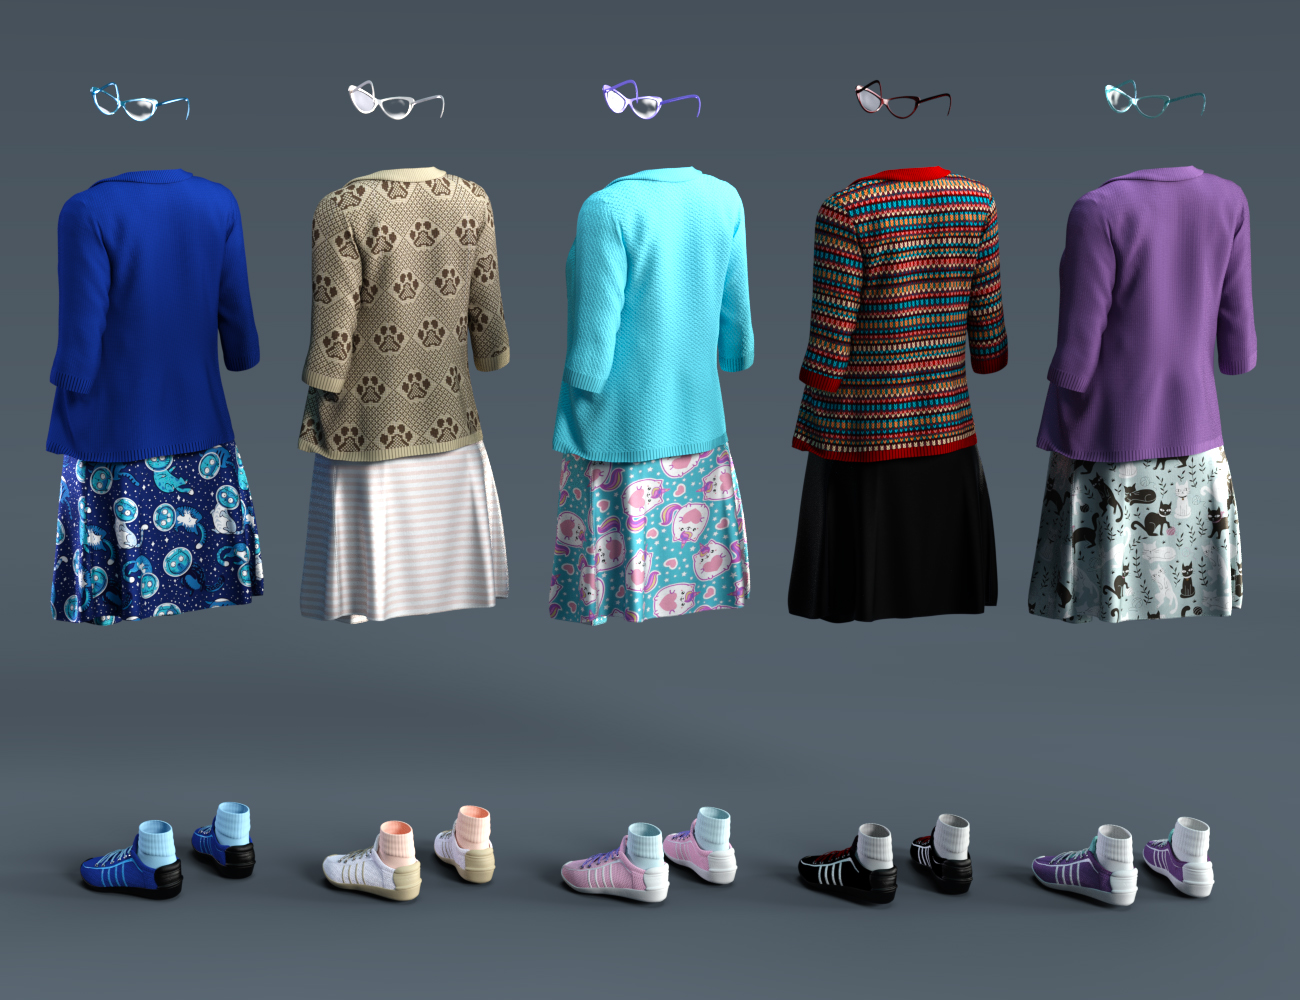 dForce Kitten Dress Textures by: 3D-GHDesignSade, 3D Models by Daz 3D